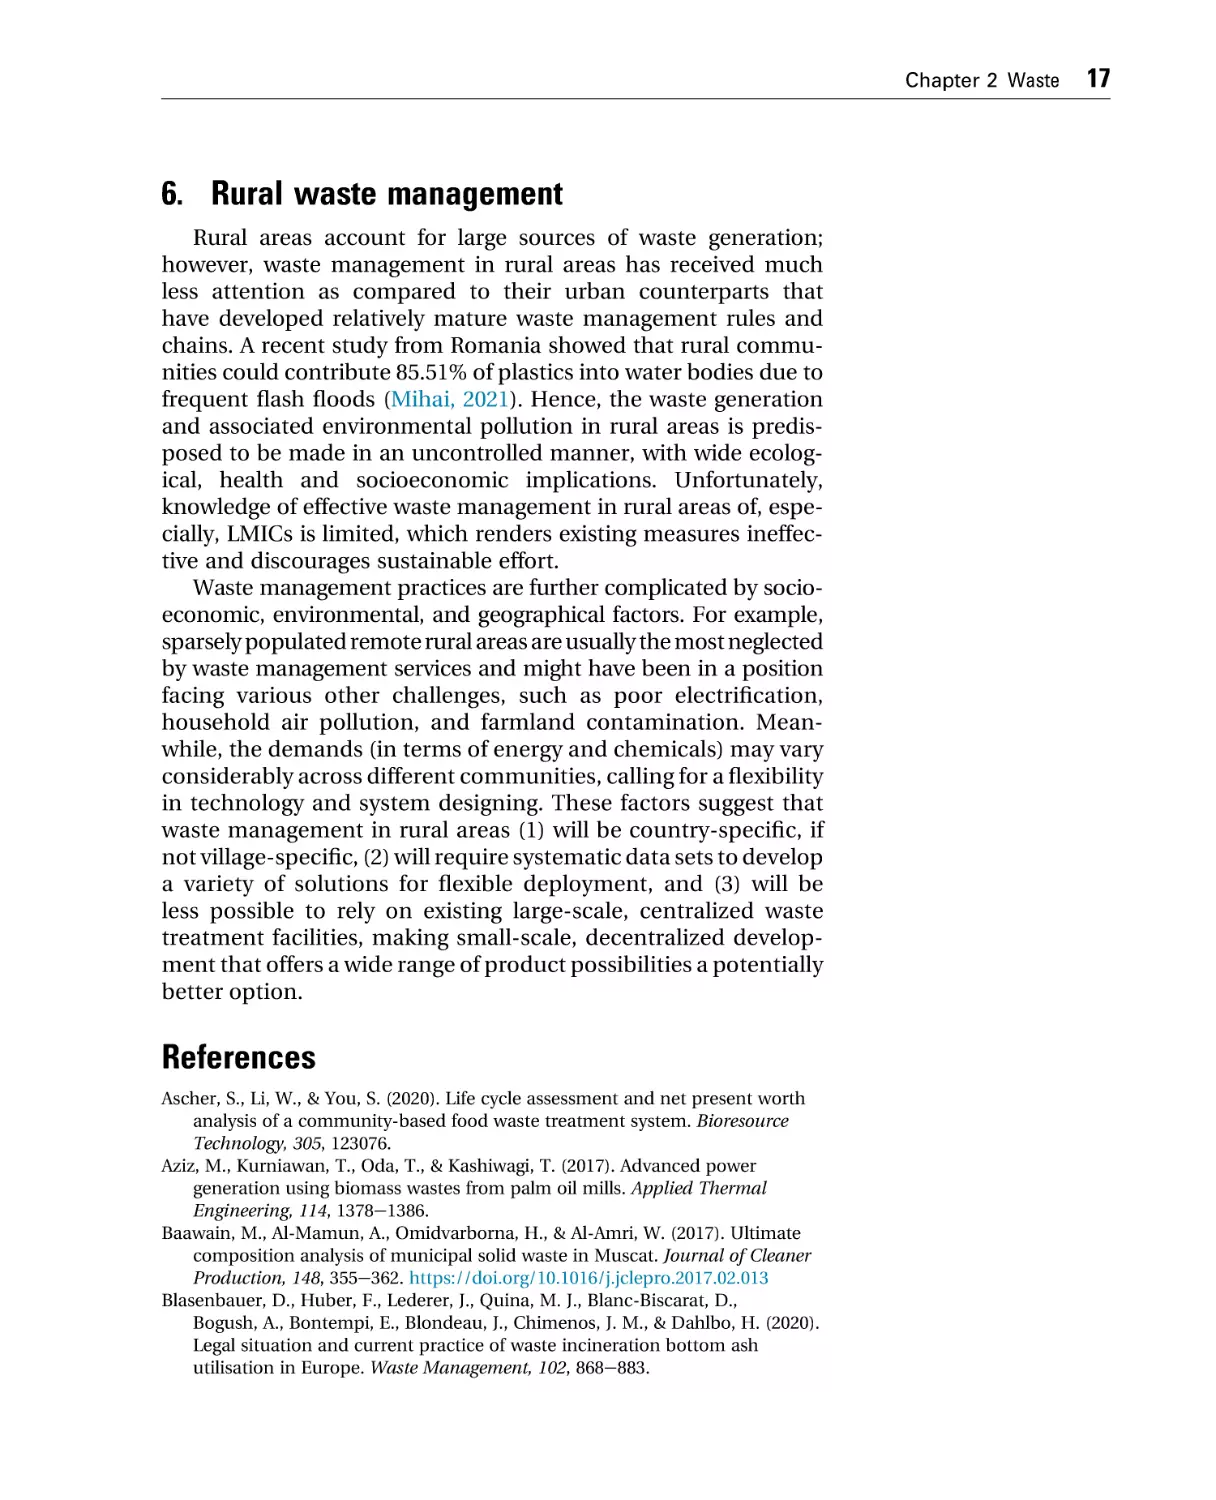 6. Rural waste management
References